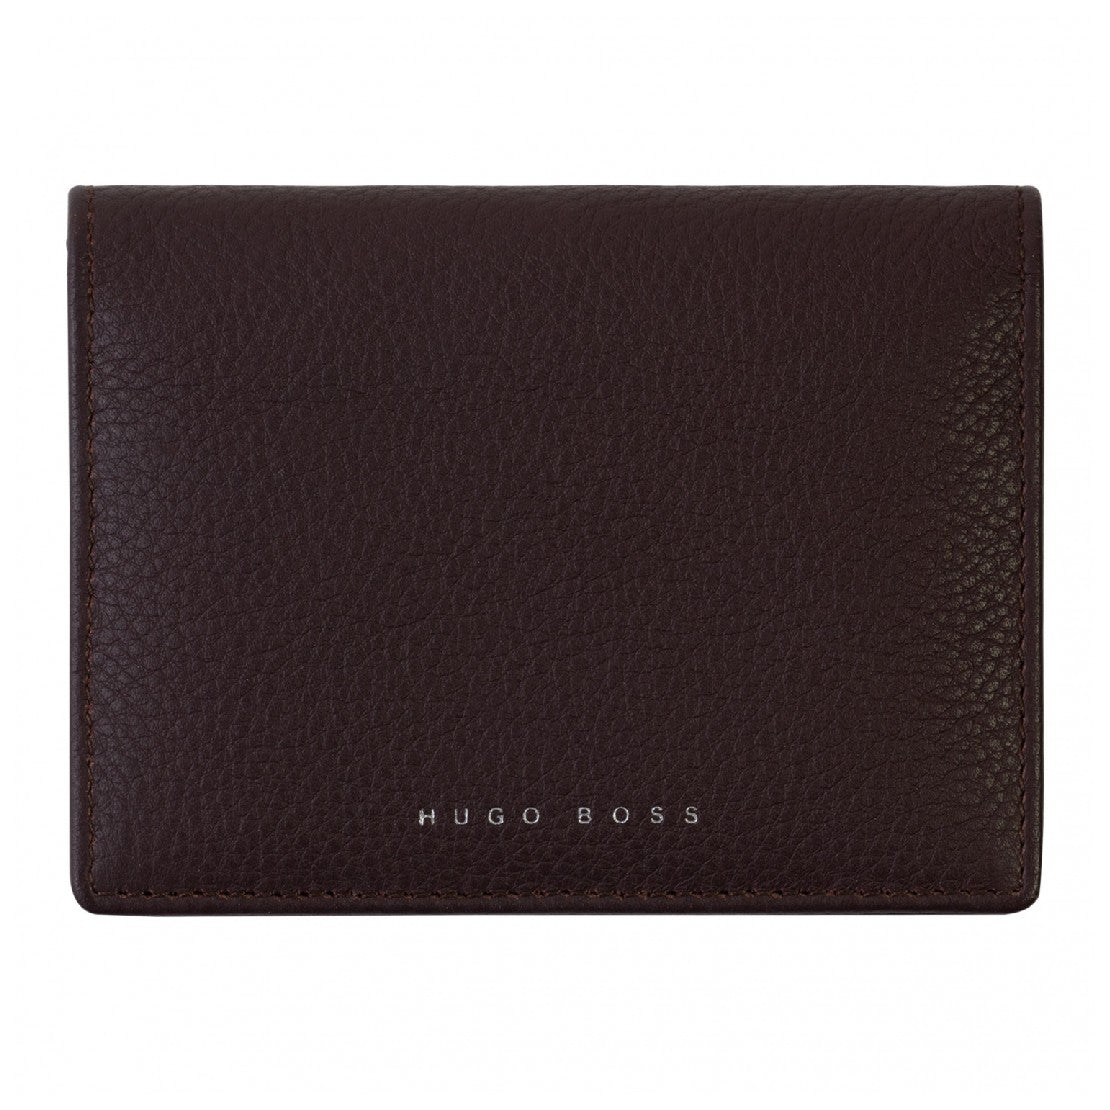 Burgundy wallet from Hugo Boss - HBCH-0003